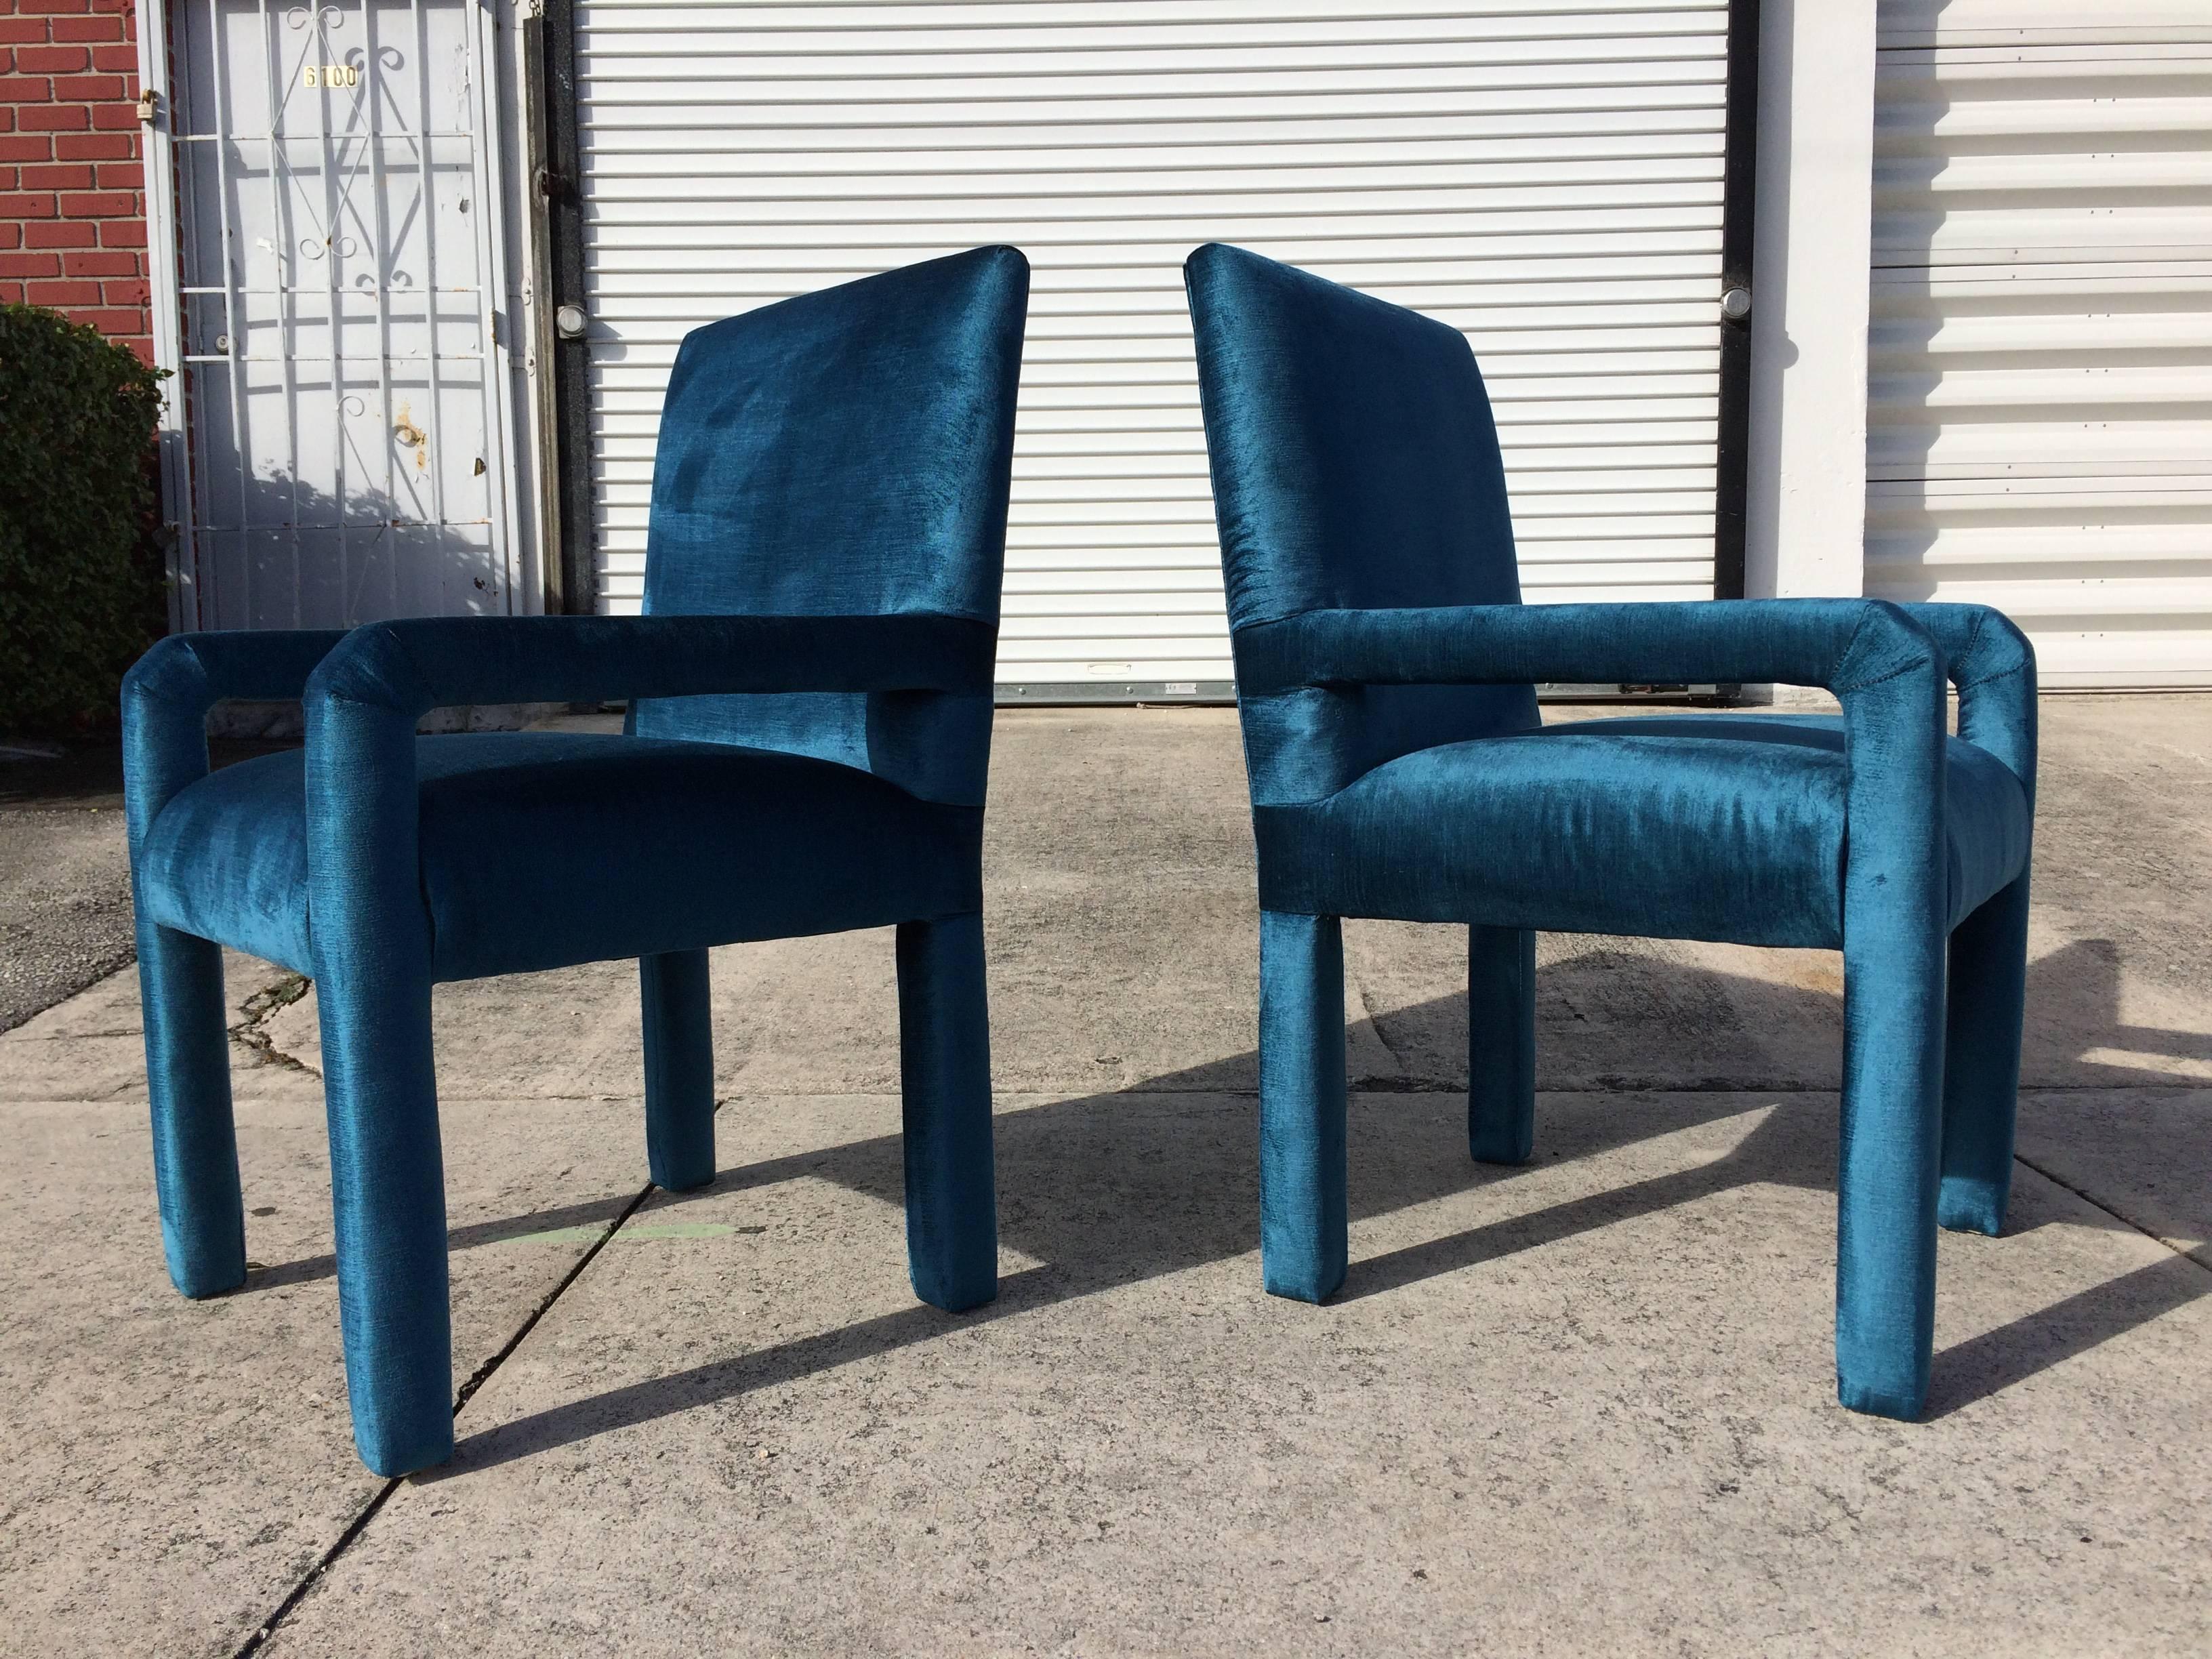 Deux chaises Parsons en velours bleu lagon.
 